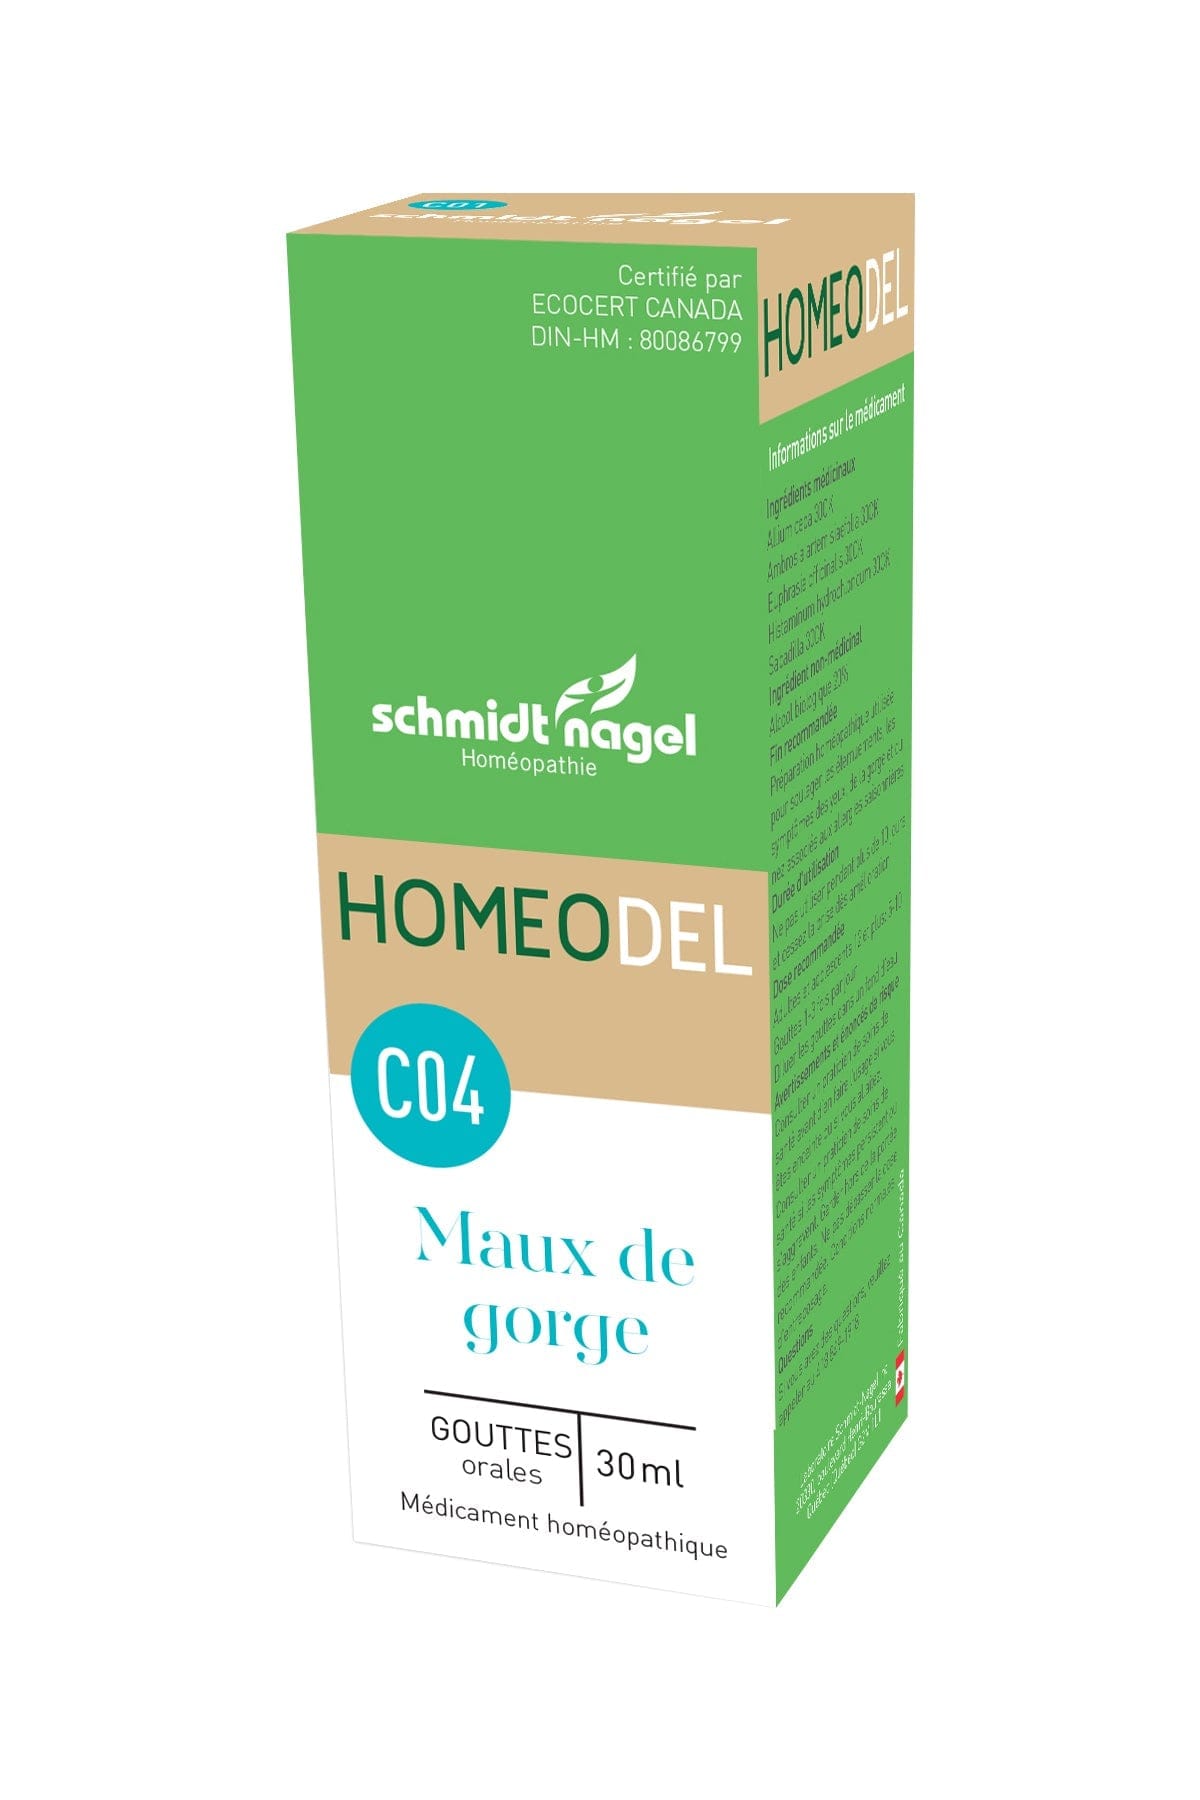 HOMEODEL Suppléments Homeodel C04(maux de gorge) 30ml
DATE DE PÉREMPTION : 31 AOÛT 2024